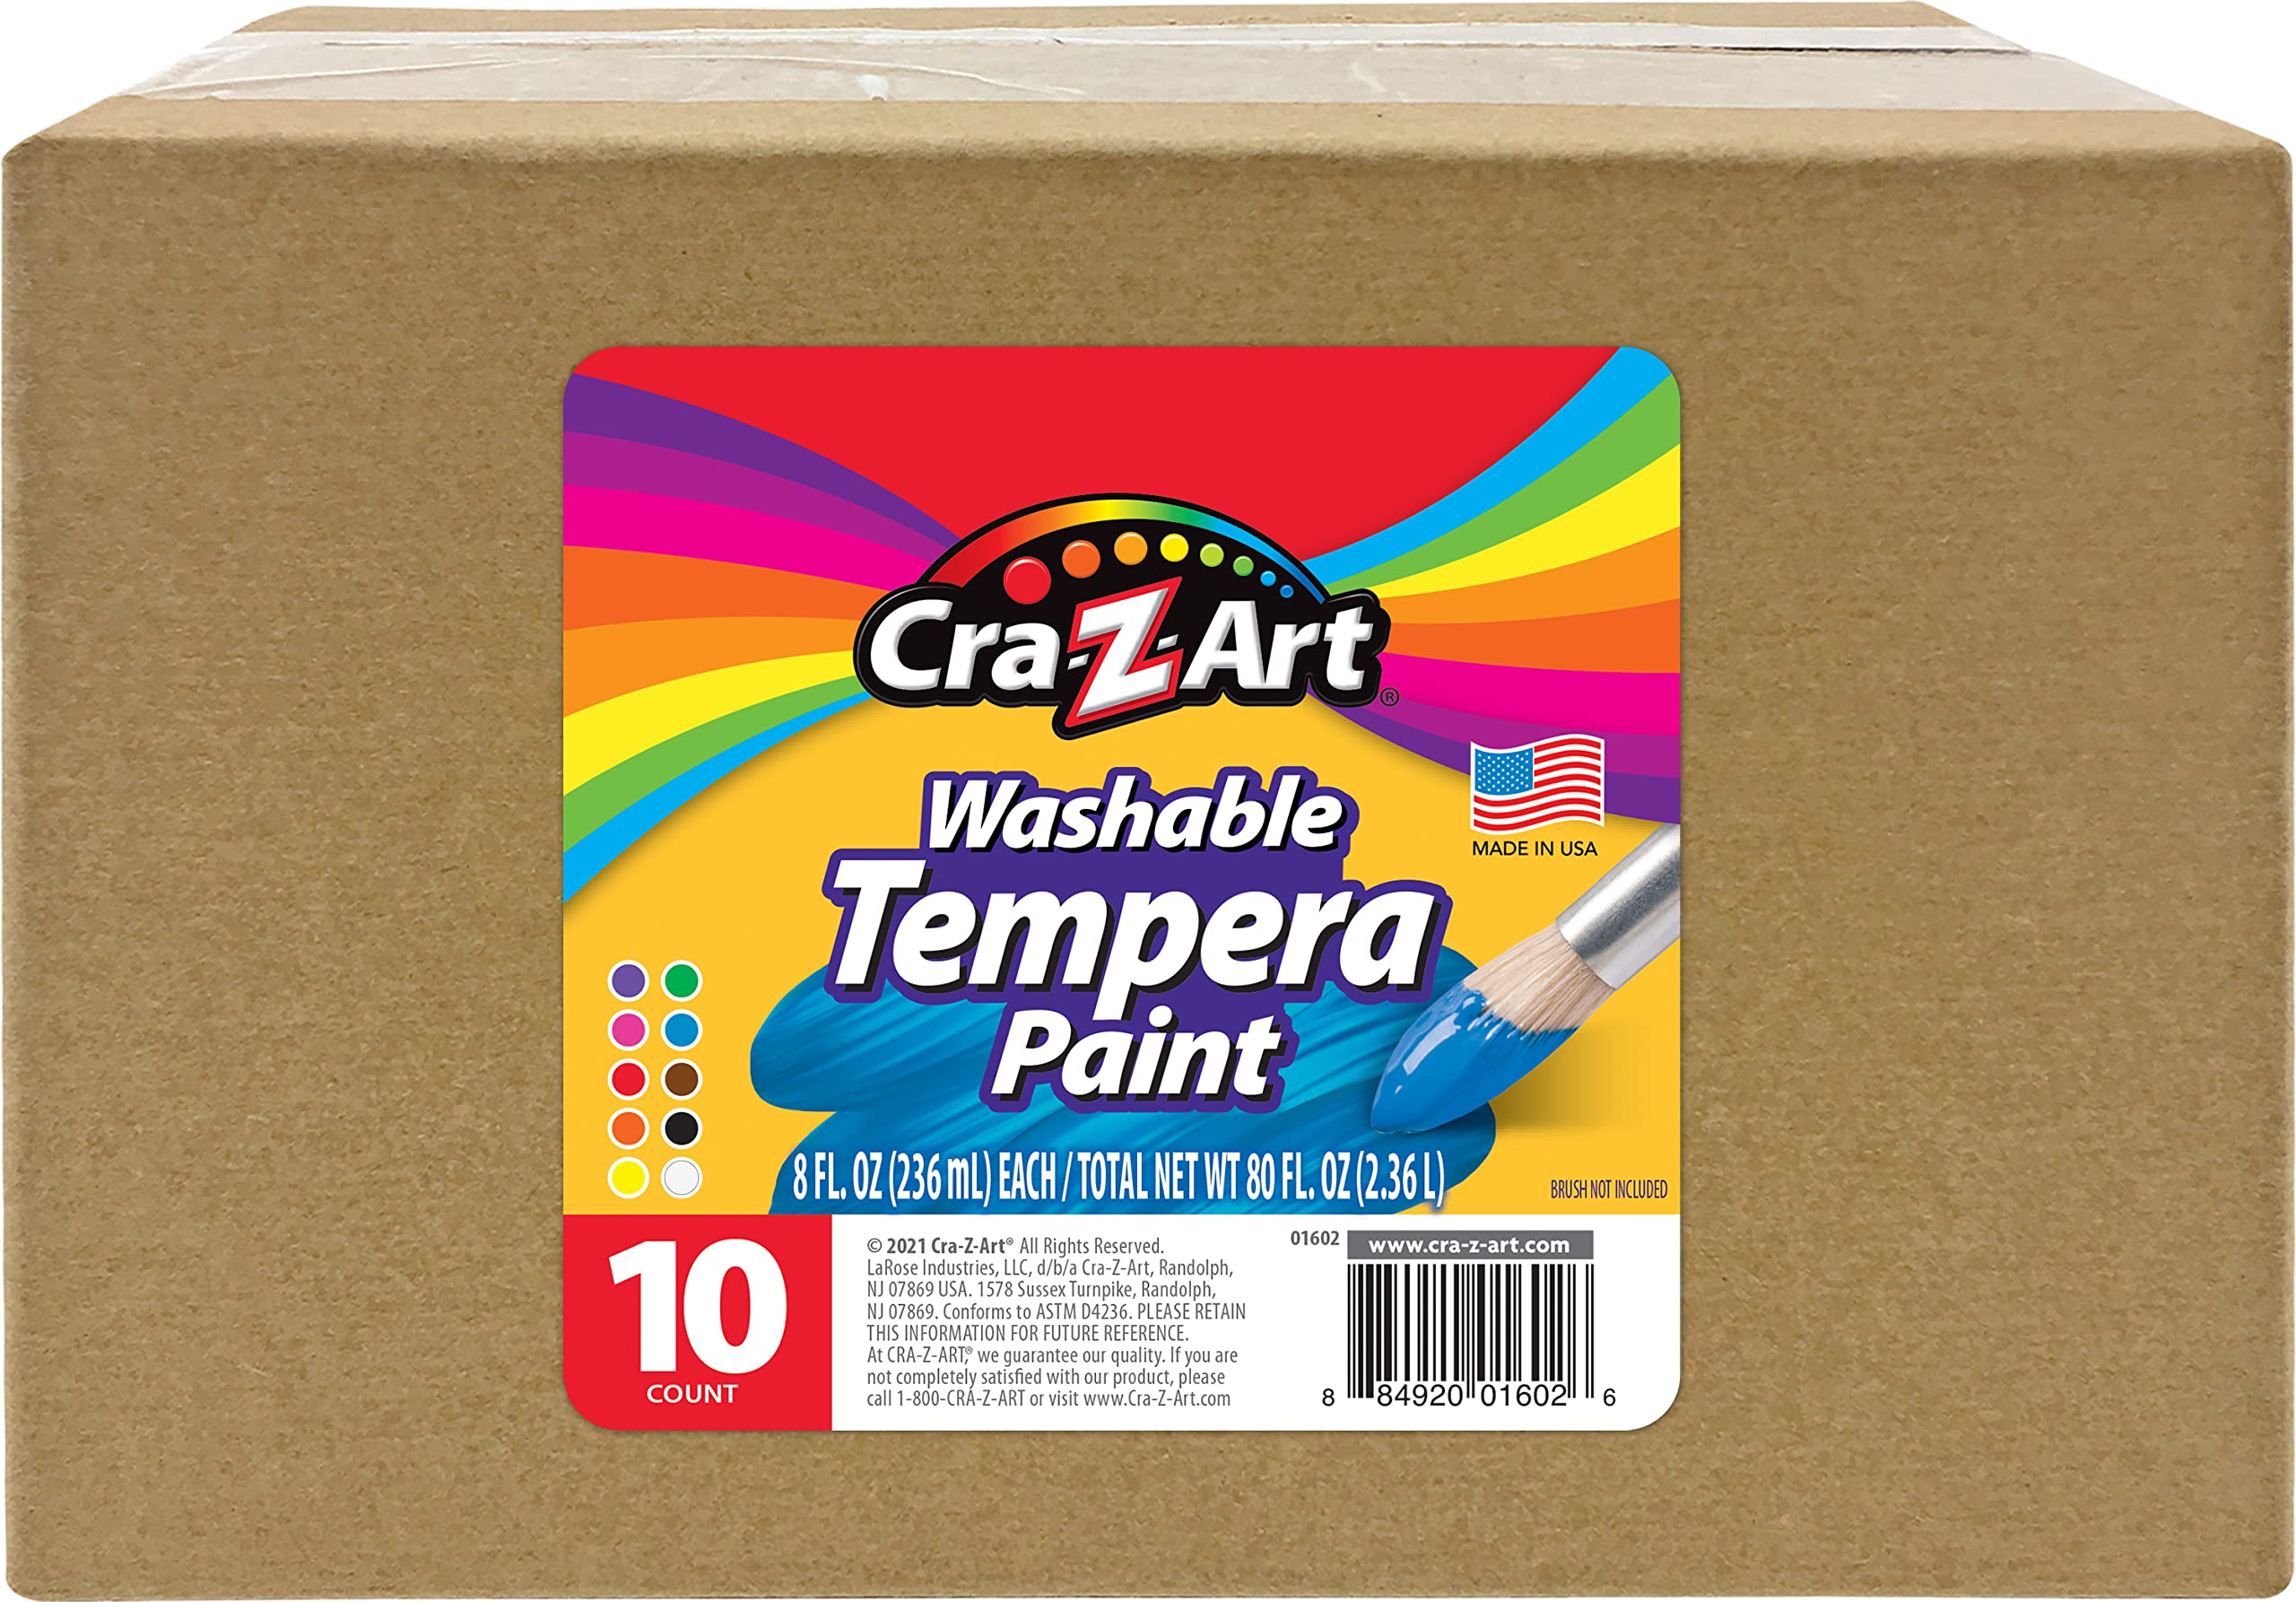 Cra-Z-Art Washable Tempera Paint Bulk Pack 10ct, Assorted Colors 8oz each bottle